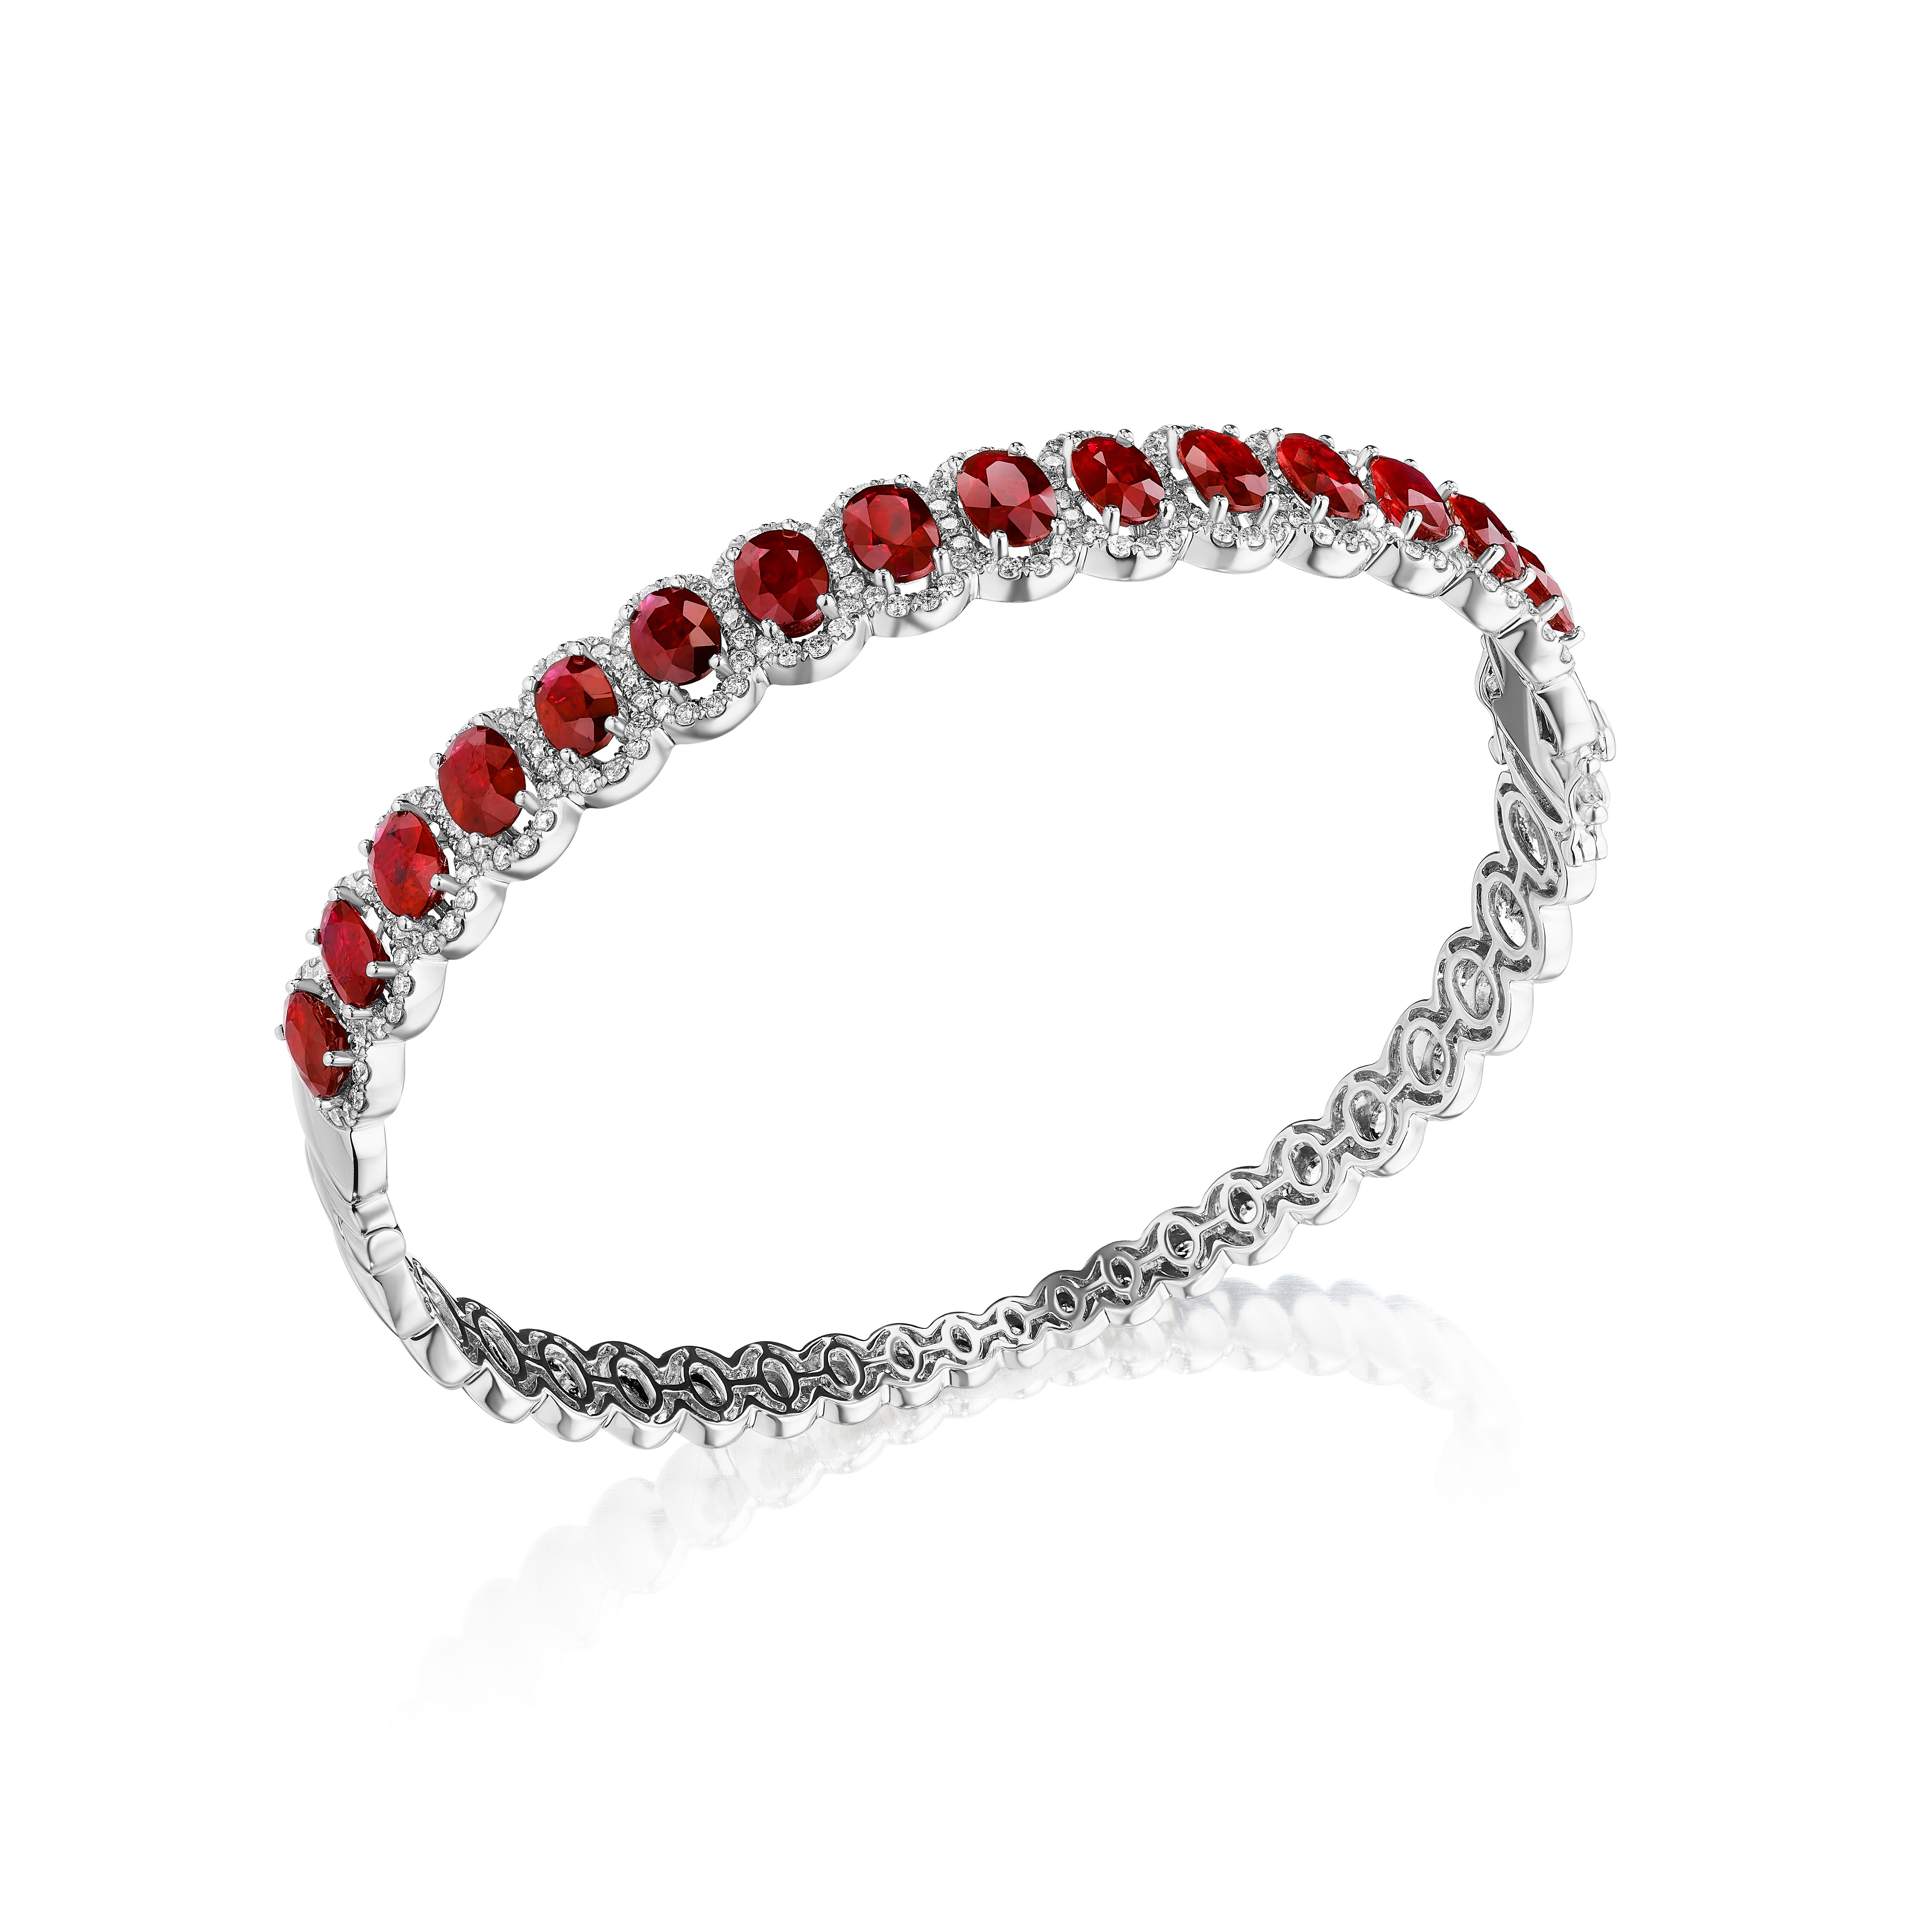 •	Un assortiment vraiment exquis de 15 rubis rouges profonds de taille ovale est encadré par de délicats halos de diamants ronds de taille brillante dans ce magnifique bracelet. Les pierres sont serties dans de l'or blanc 14KT et ont un poids total